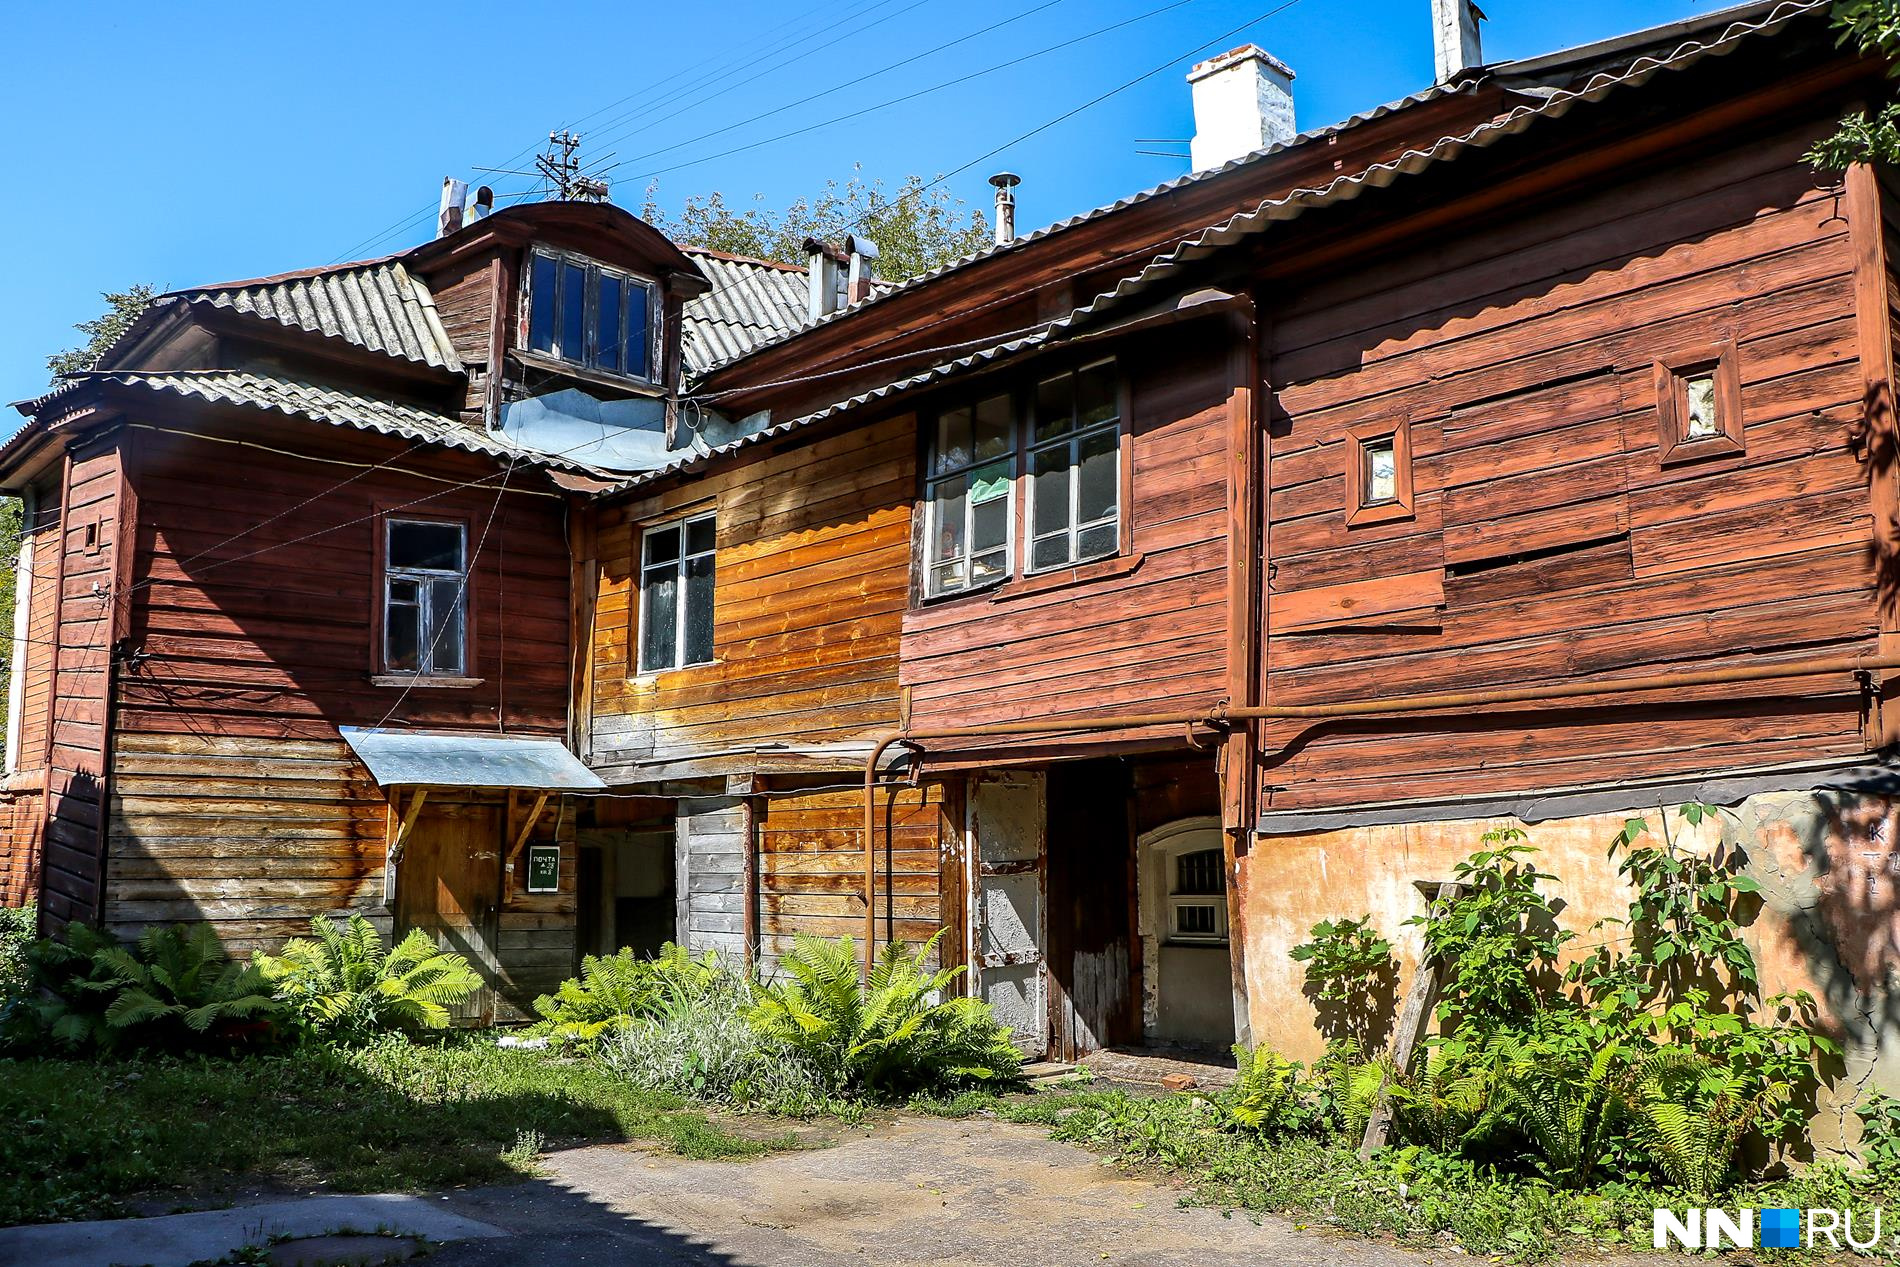 В Нижнем Новгороде хорошо сохранились образцы архитектуры прошлых веков<br><br>